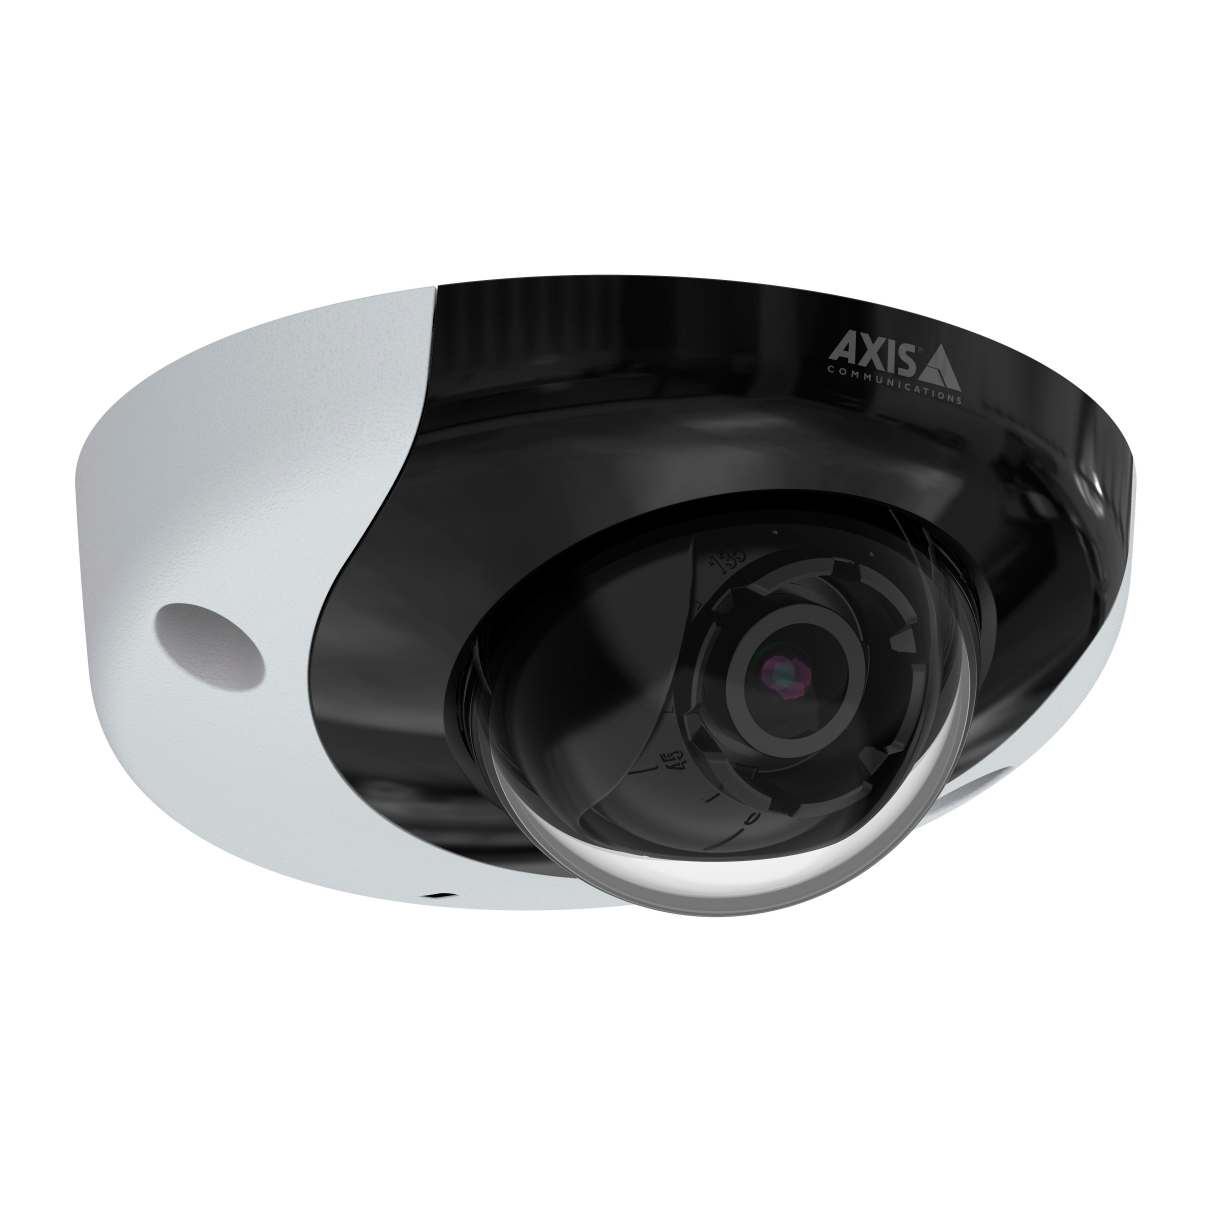 IP-камера видеонаблюдения Axis P3935-LR: купить в Москве